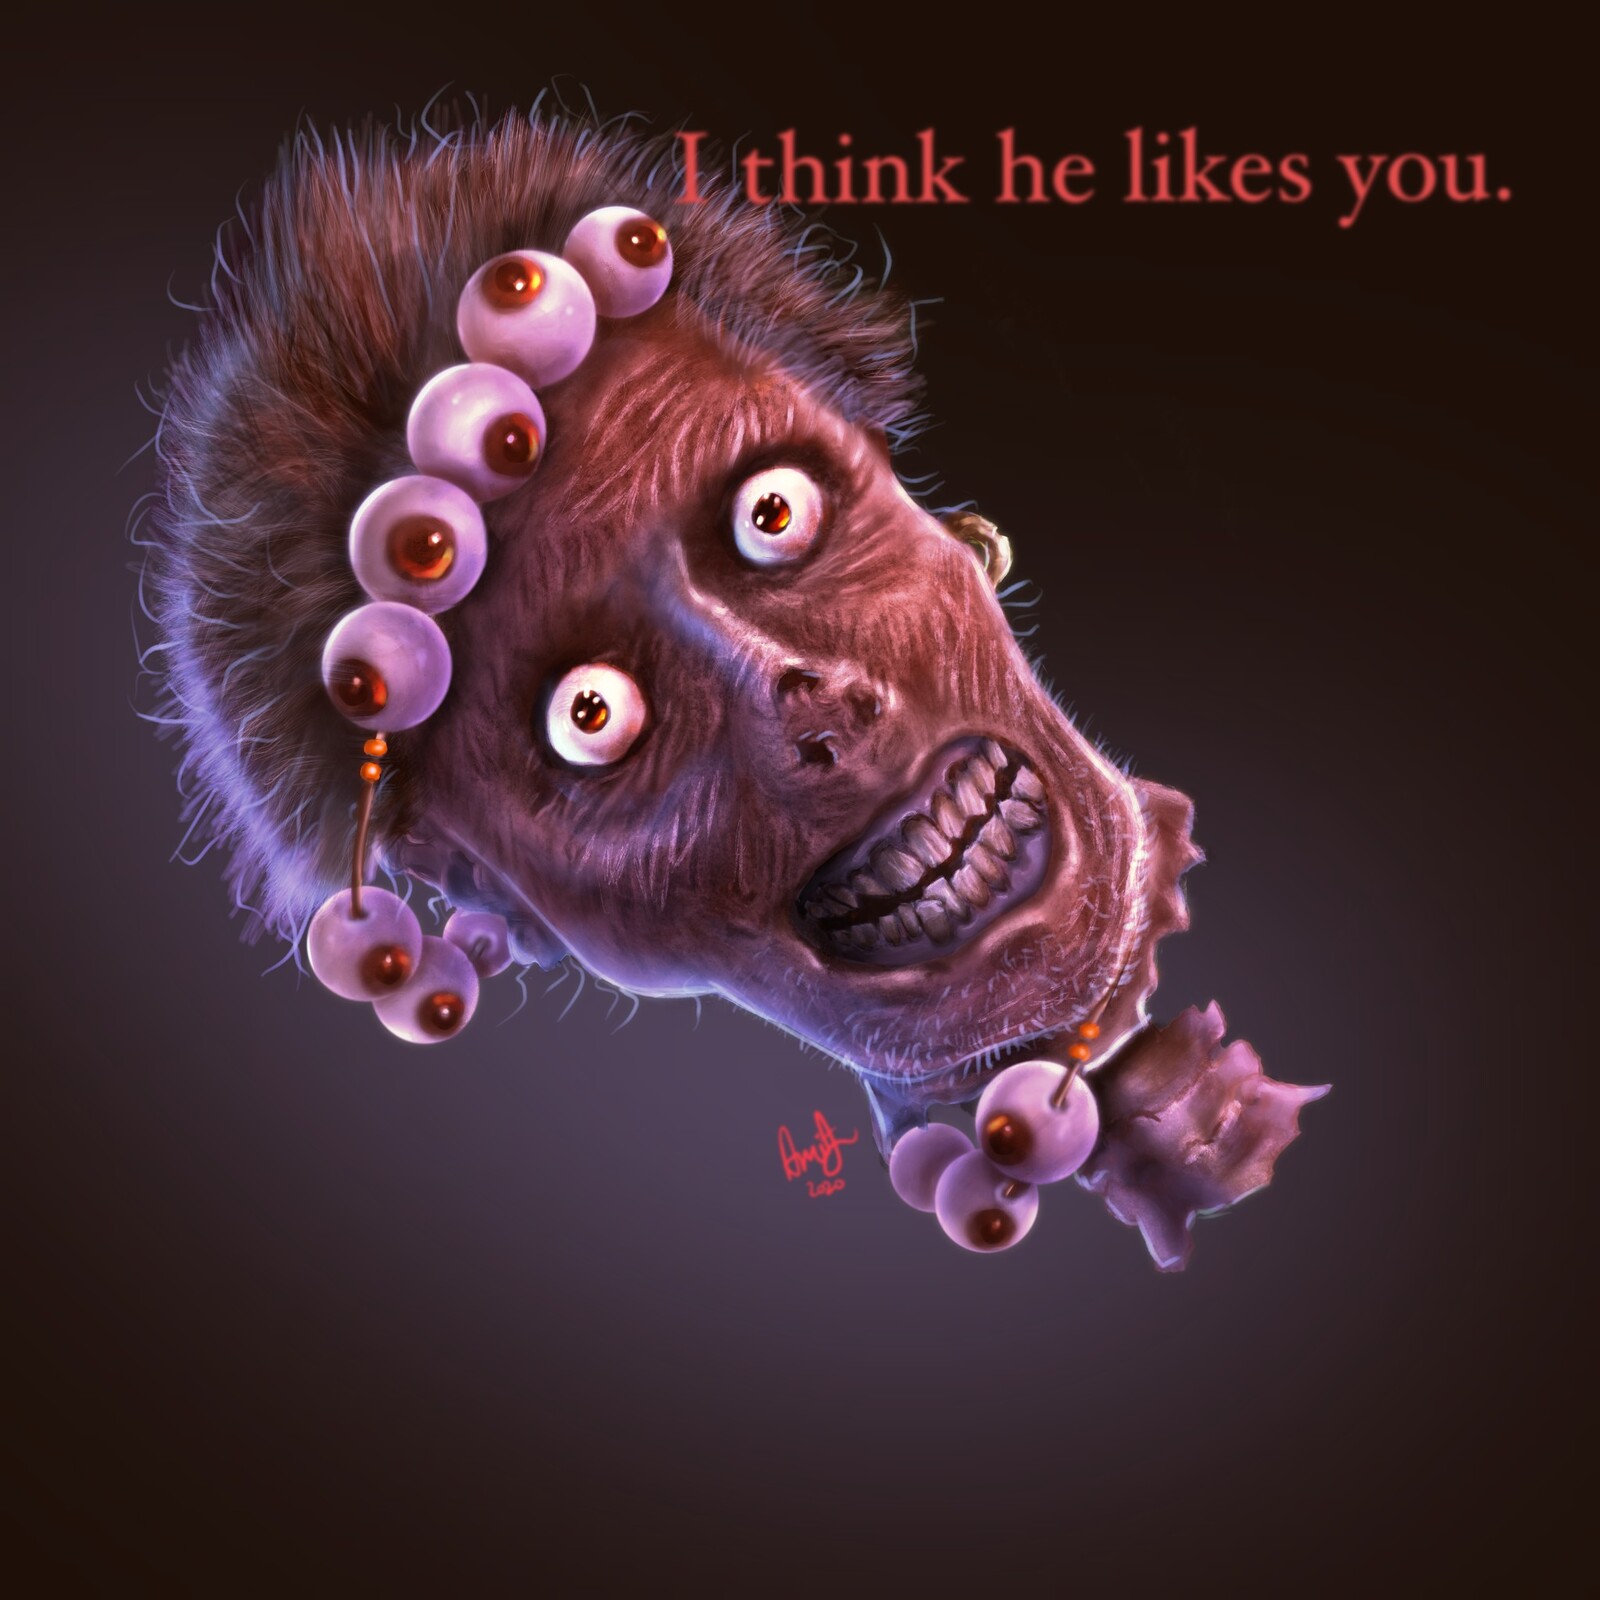 I think he likes you